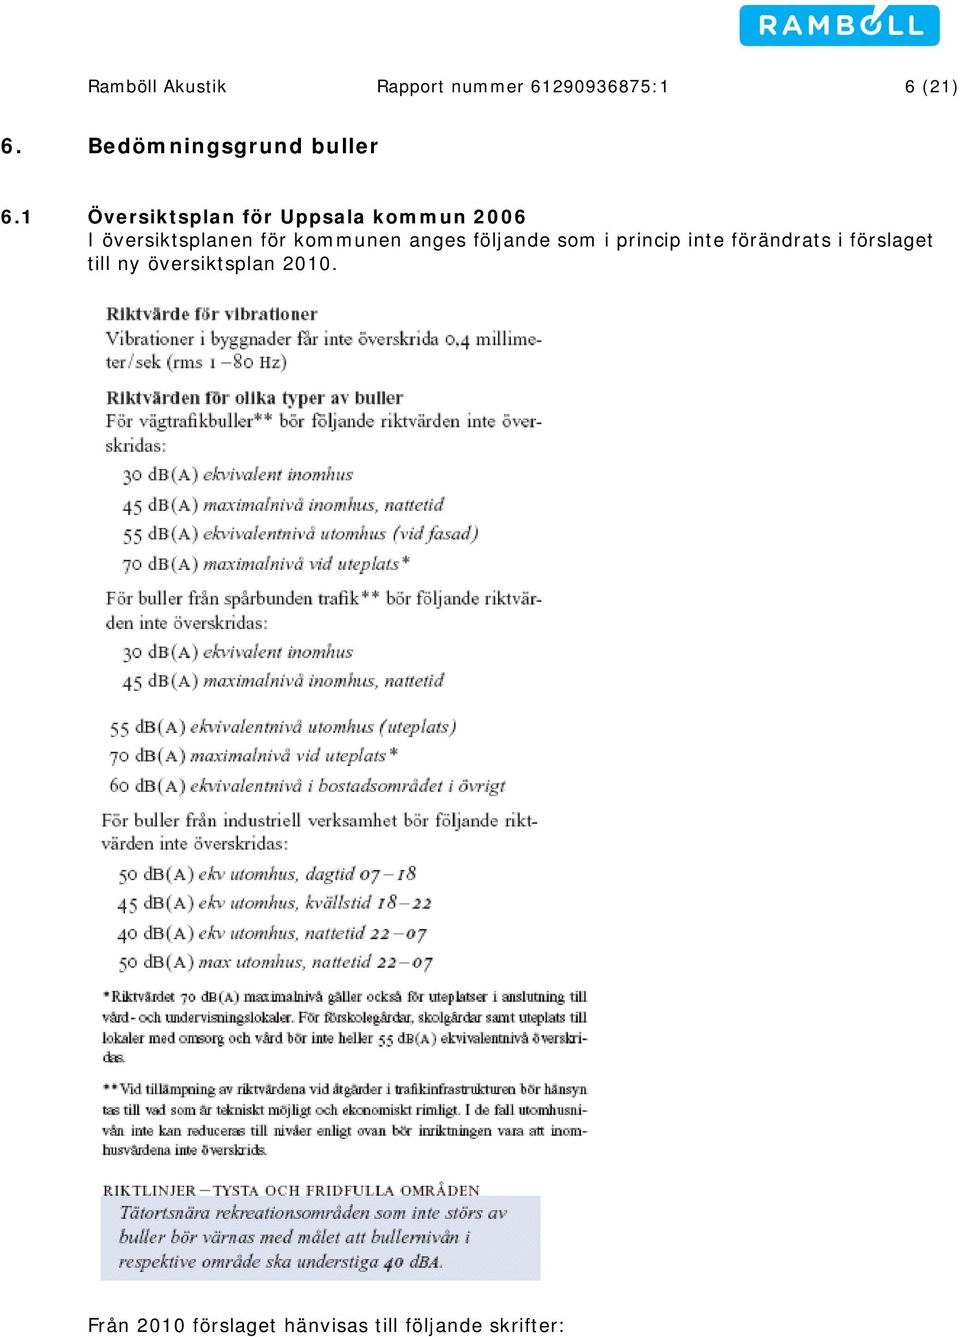 1 Översiktsplan för Uppsala kommun 2006 I översiktsplanen för kommunen